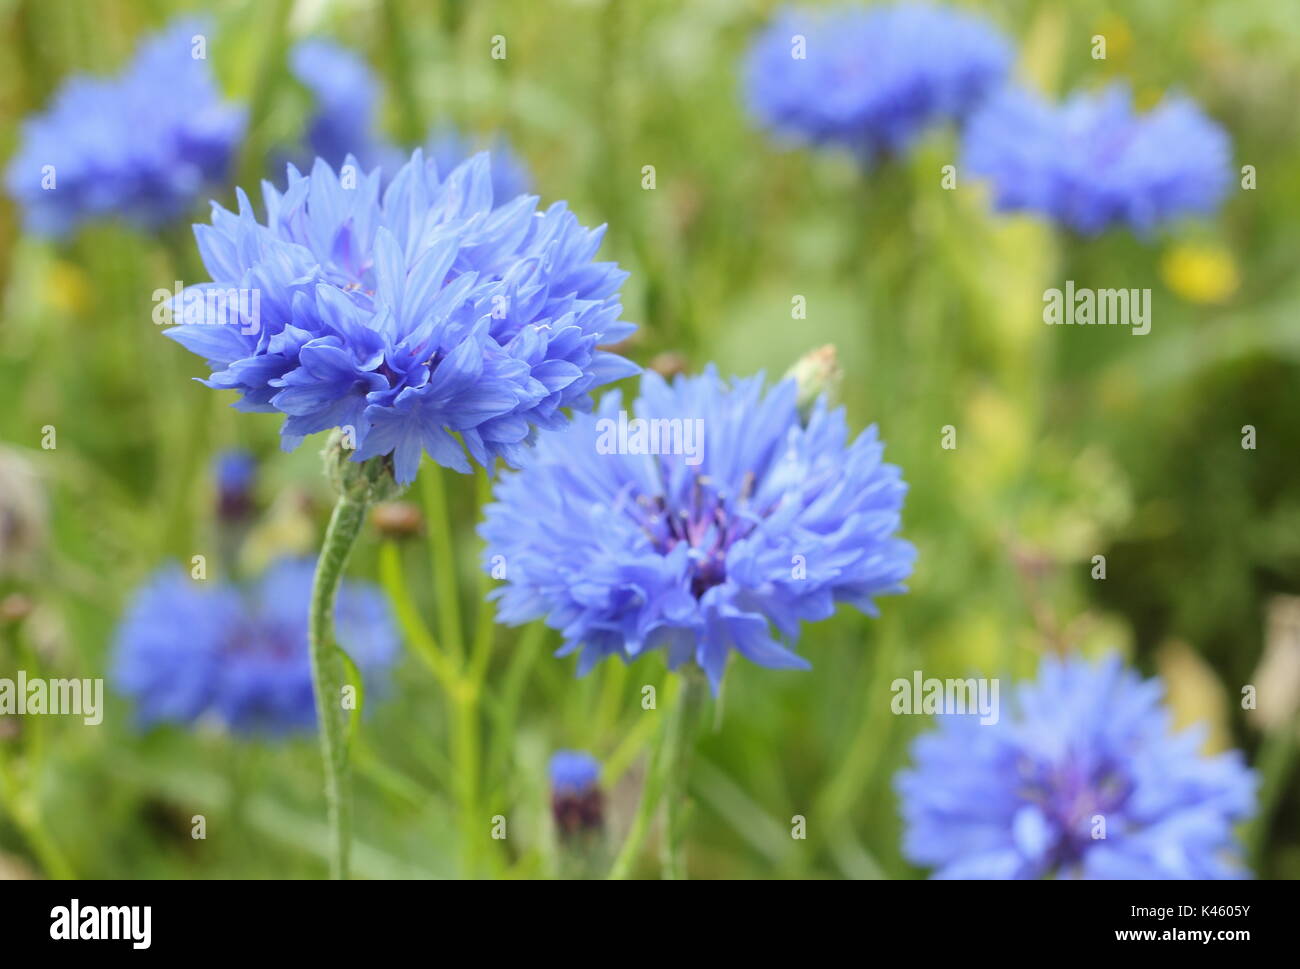 Blue cornflowers (Centaurea cyanus) in piena fioritura in un prato inglese in estate (luglio), Regno Unito Foto Stock